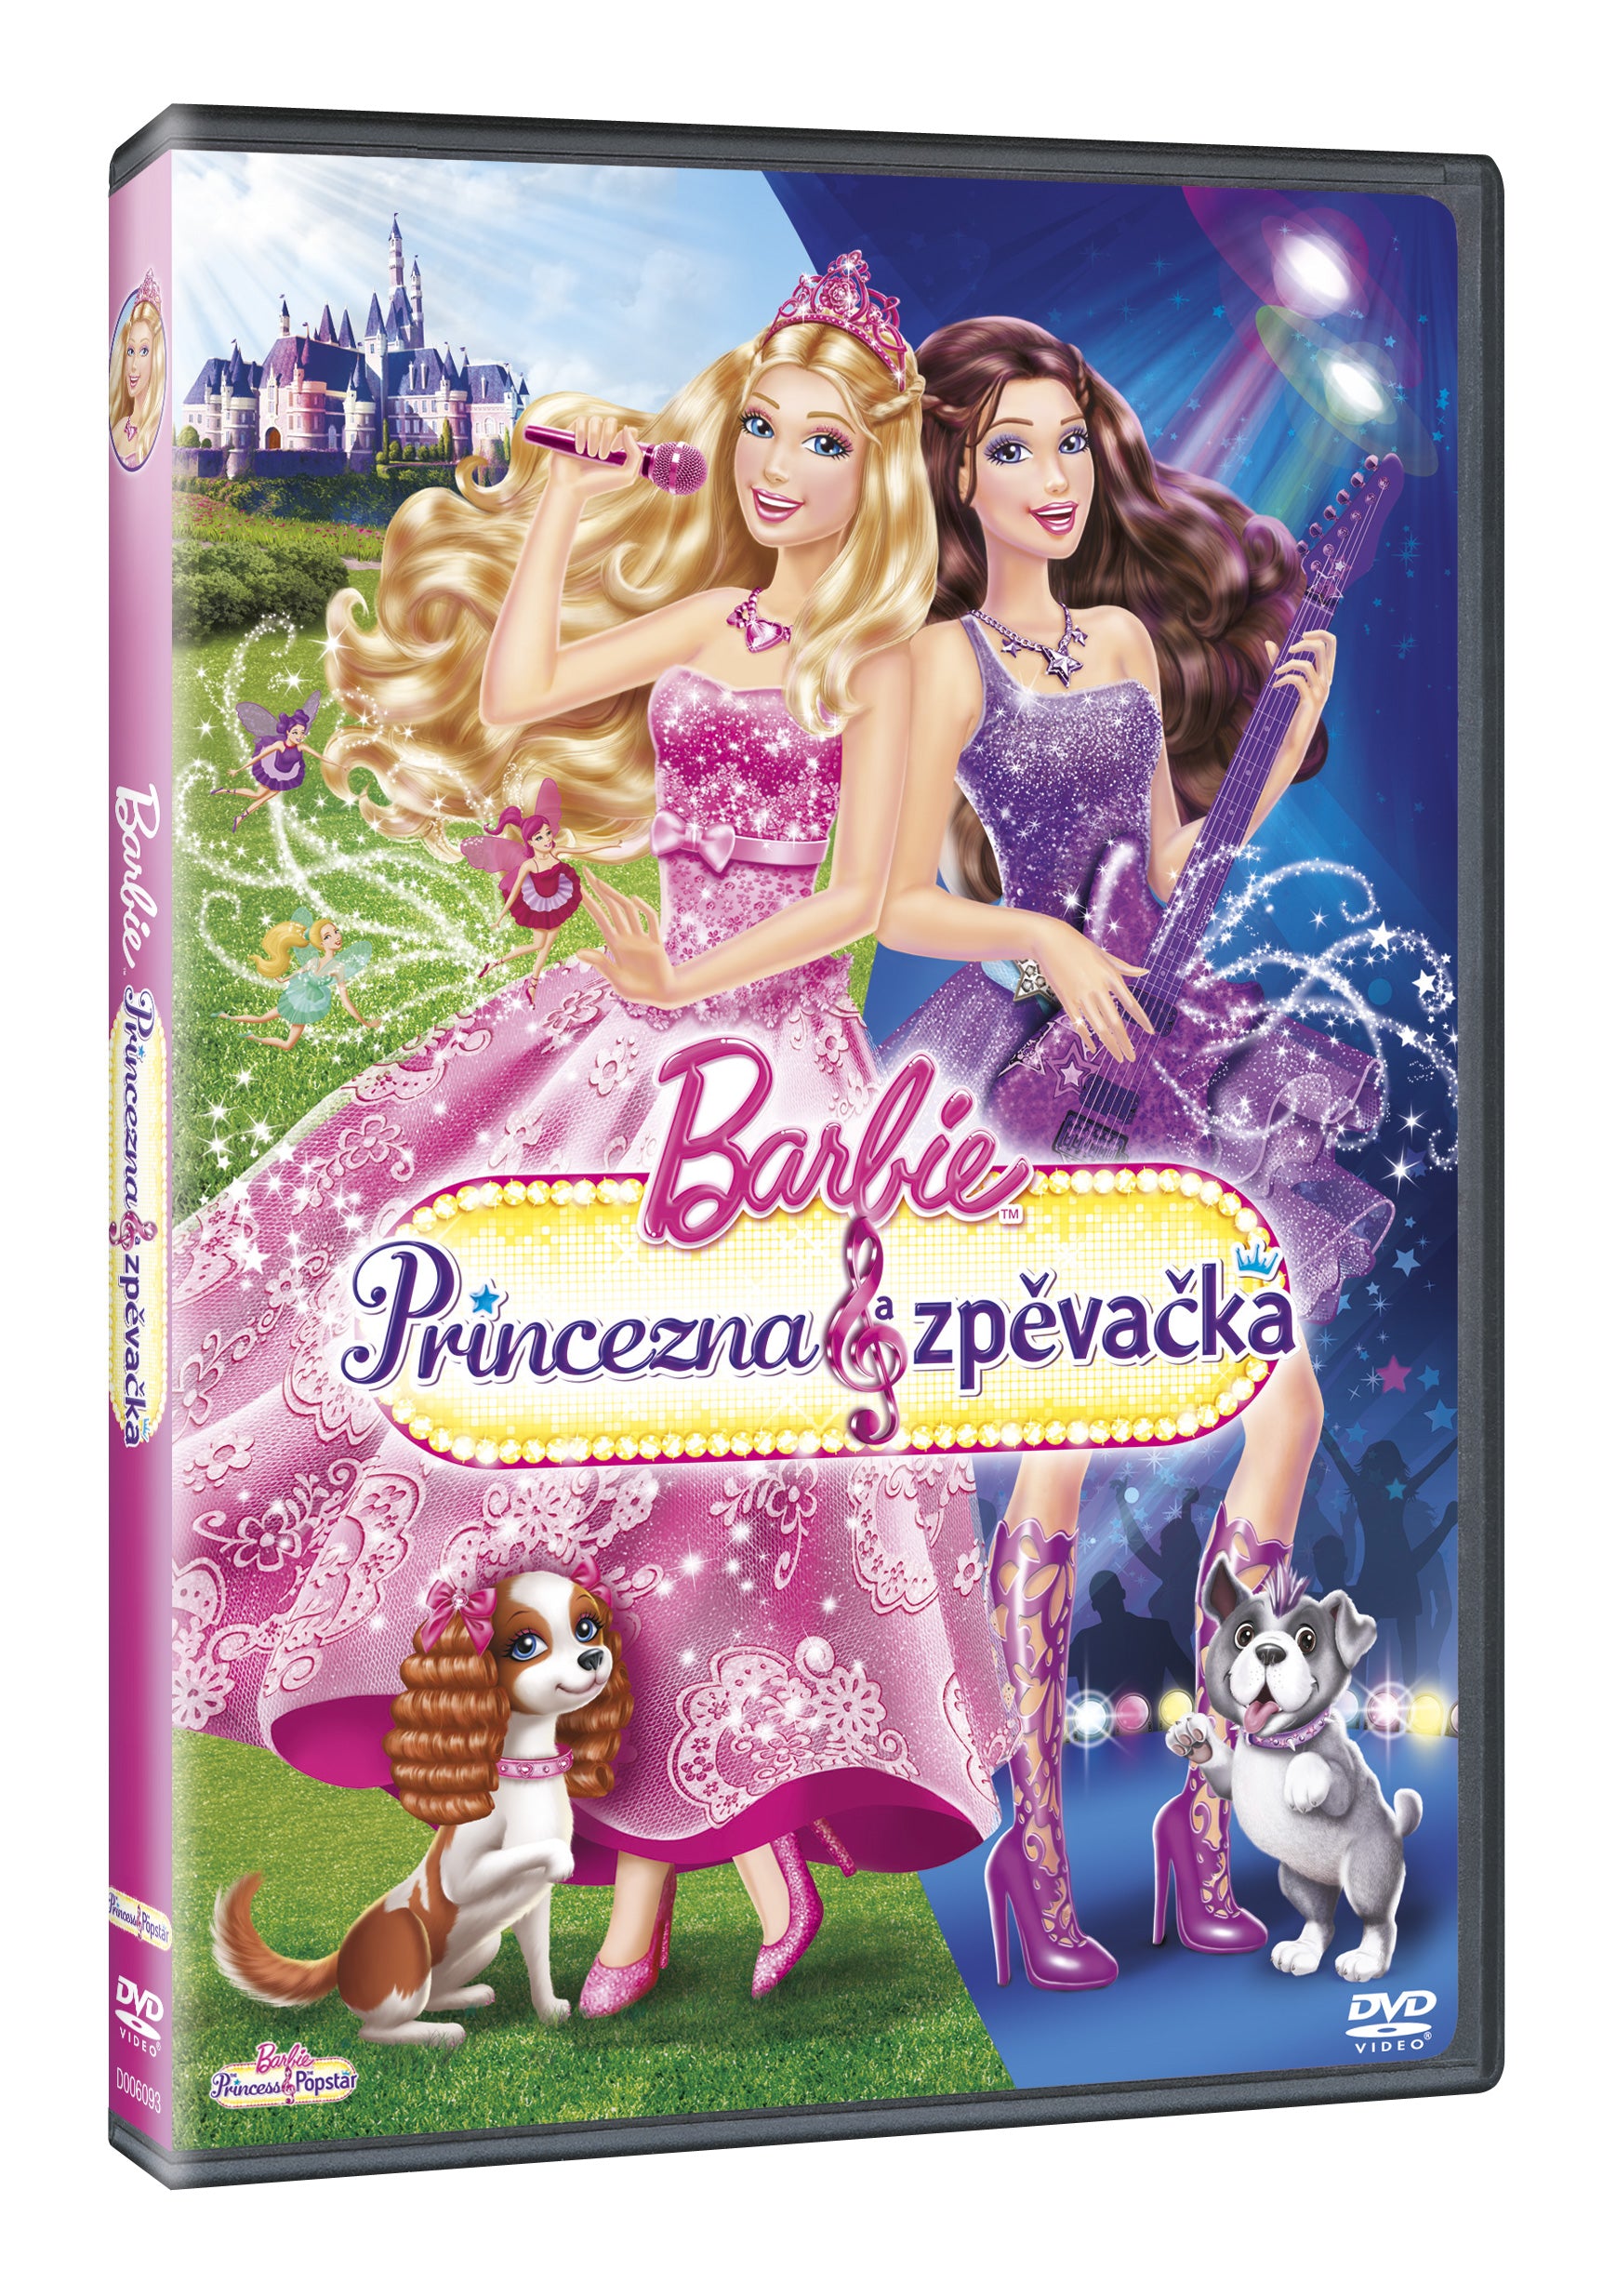 Barbie: Princezna a zpevacka DVD / Barbie: The Princess And The Popstar